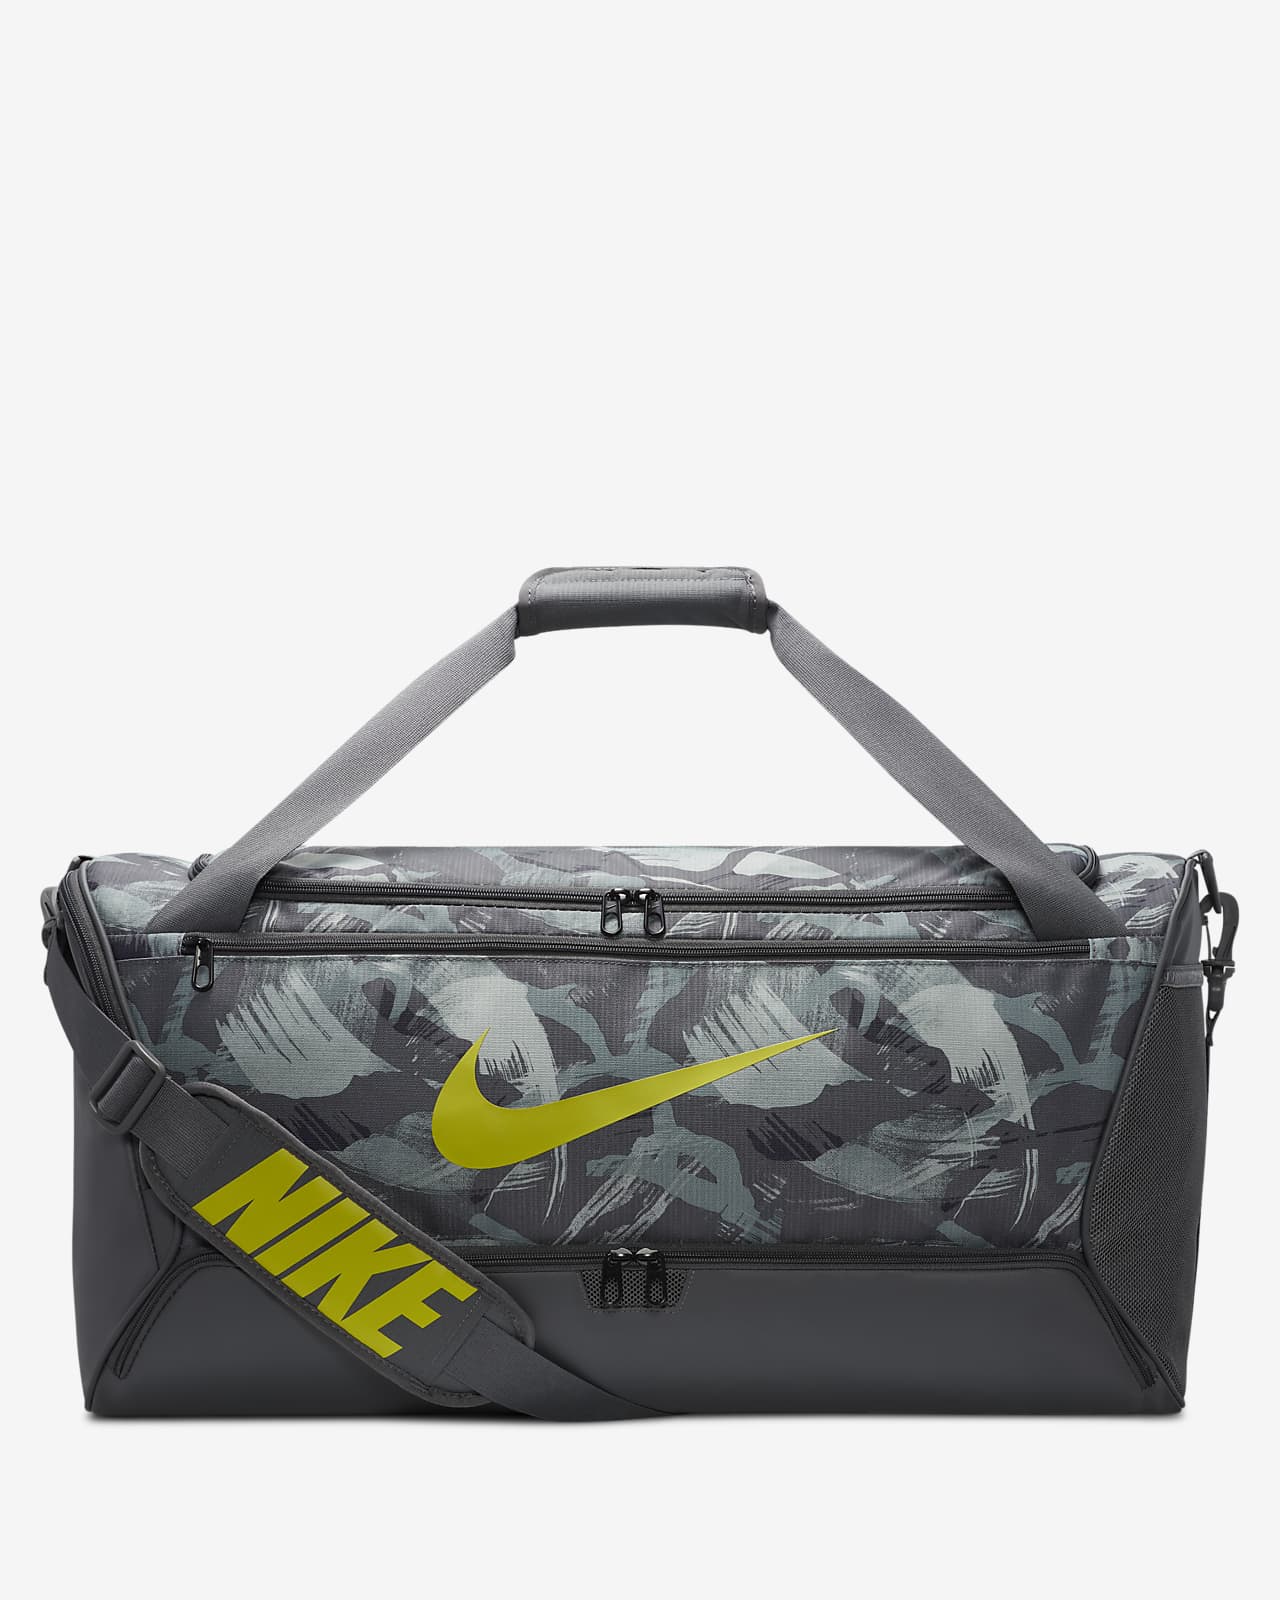 Nike Brasilia Medium Duffel - Atlantic Sportswear